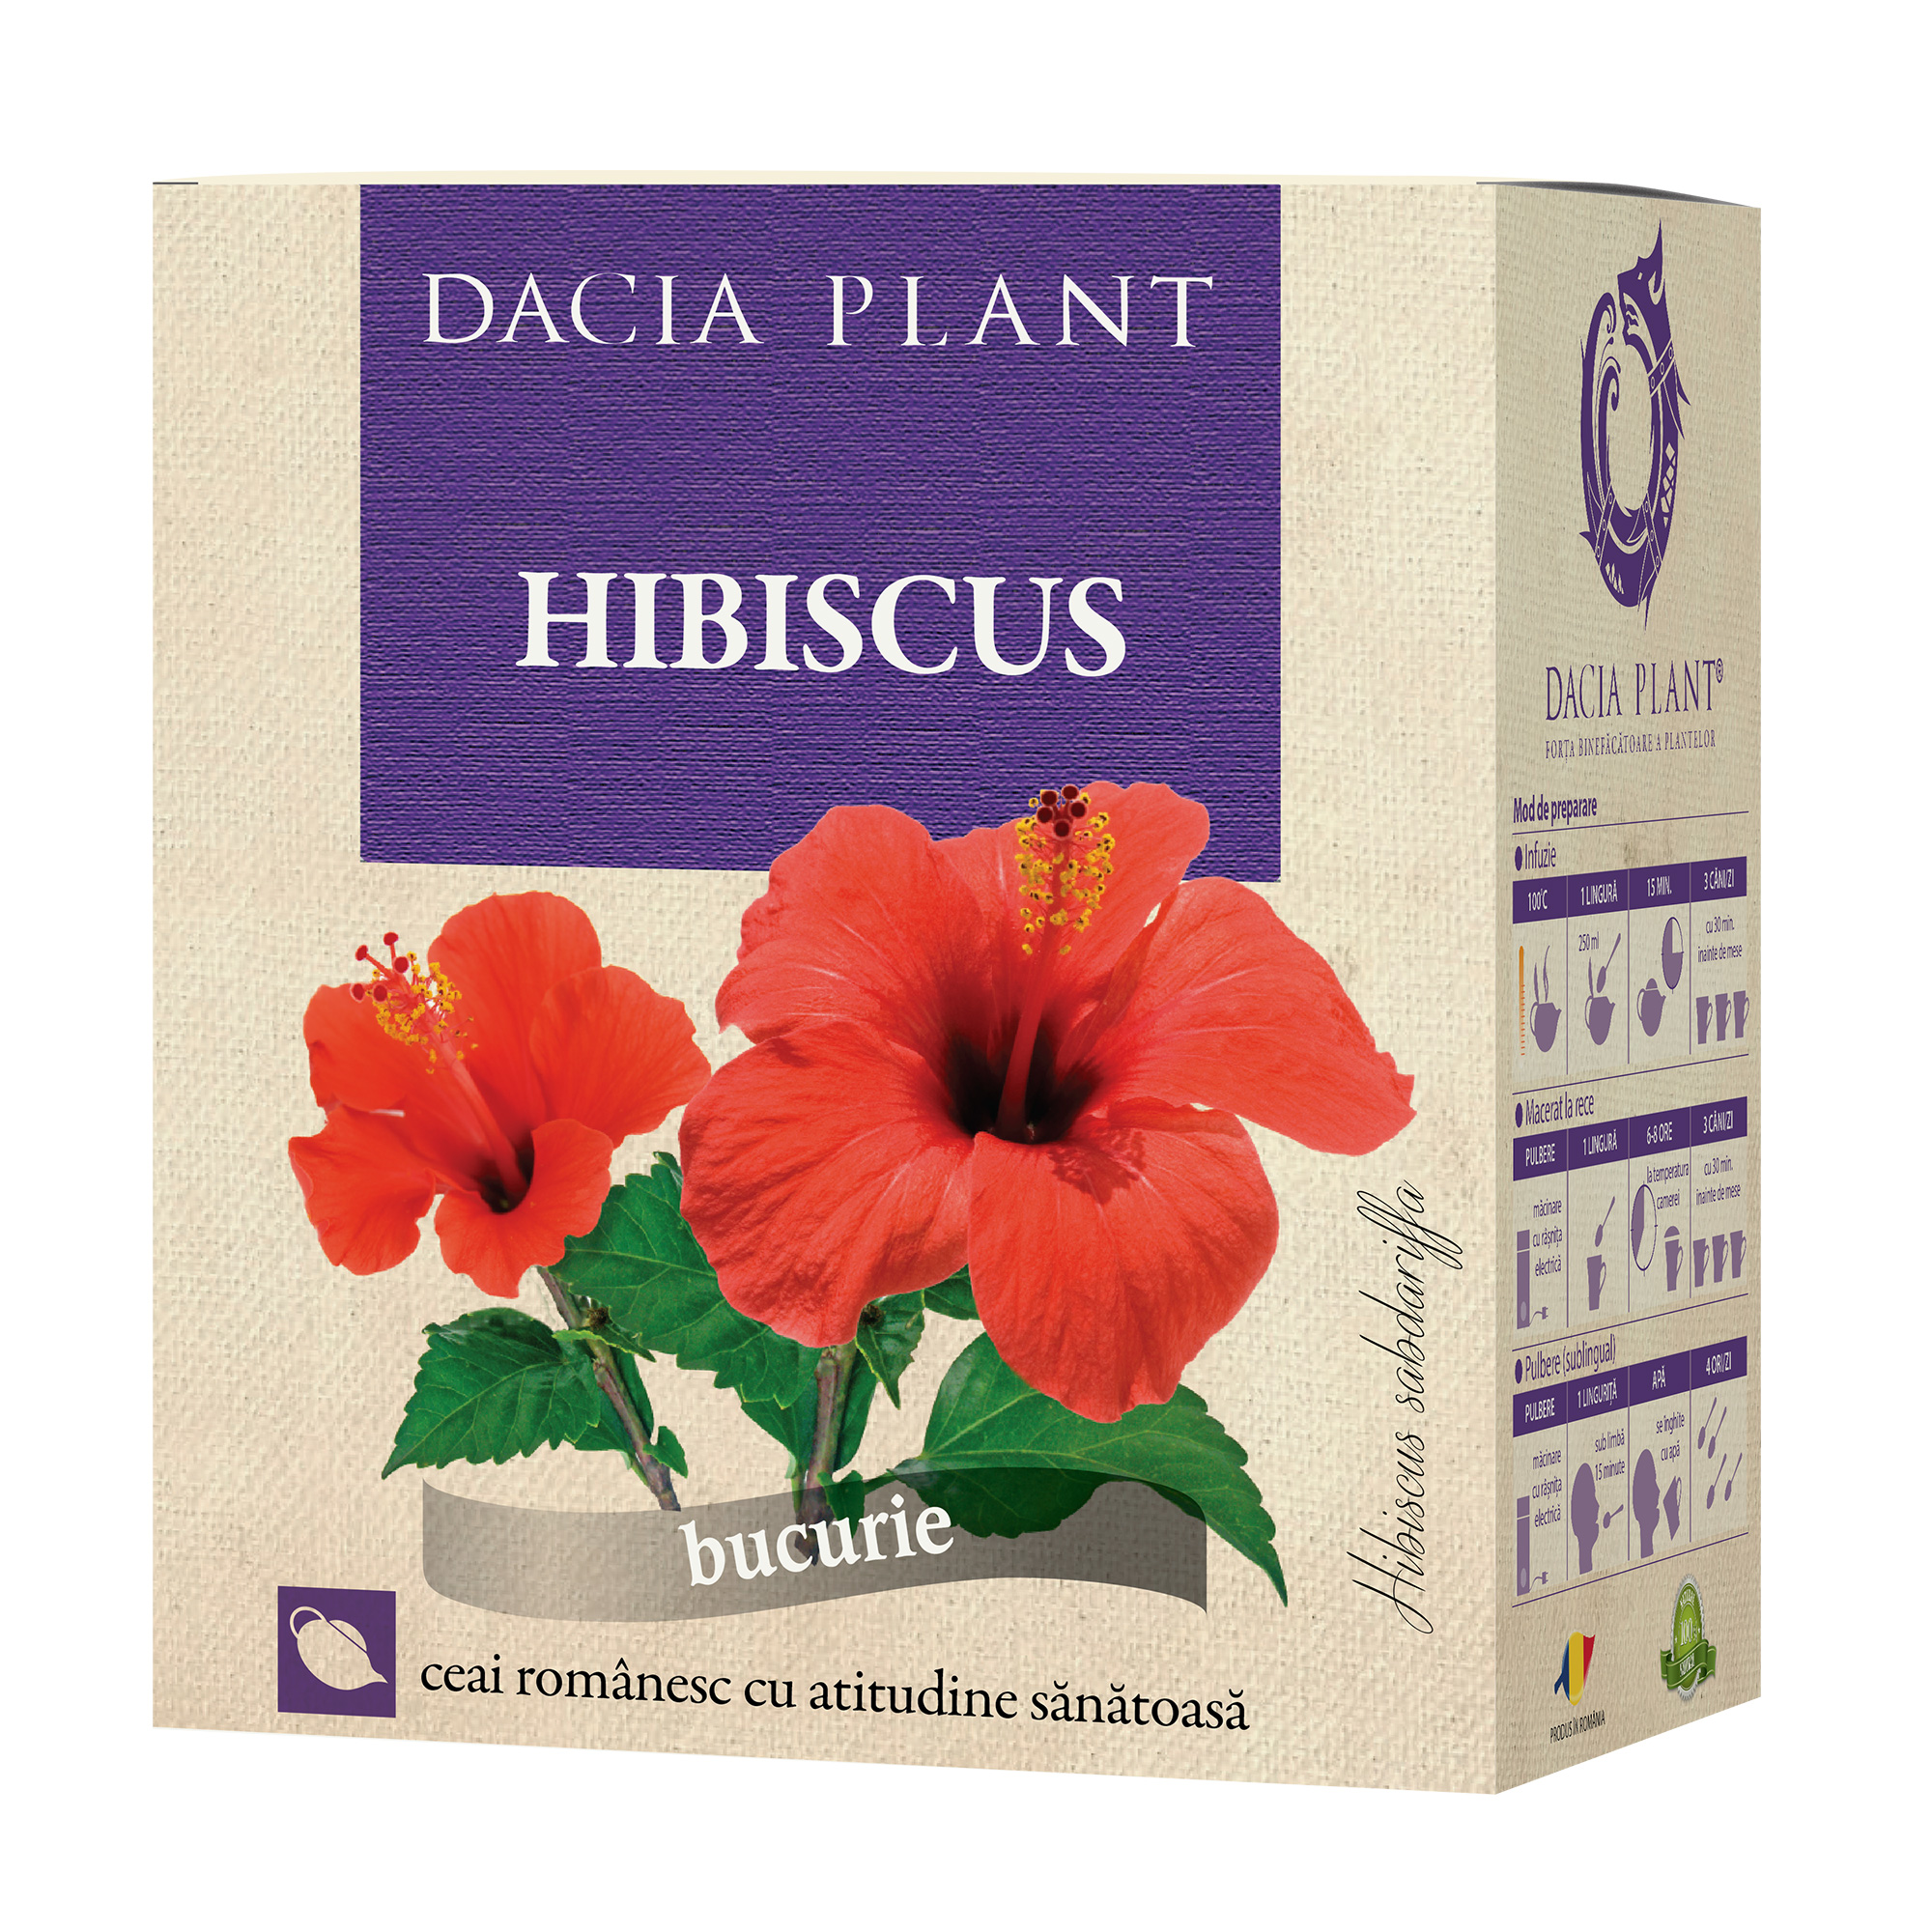 Ceaiul de hibiscus. Efecte si beneficii